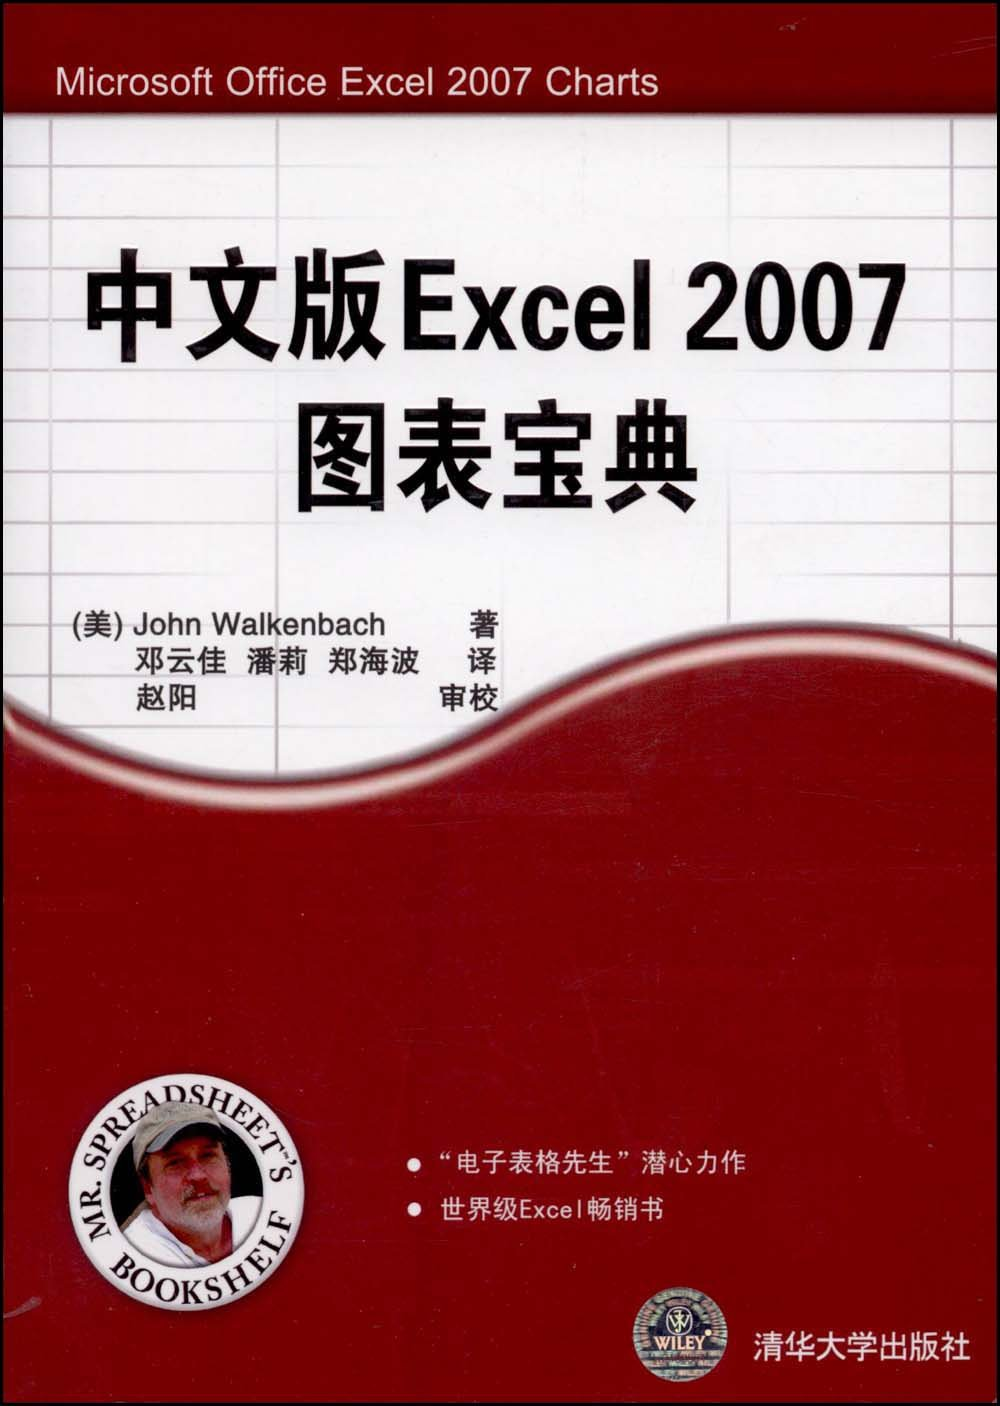 中文版Excel2007圖表寶典